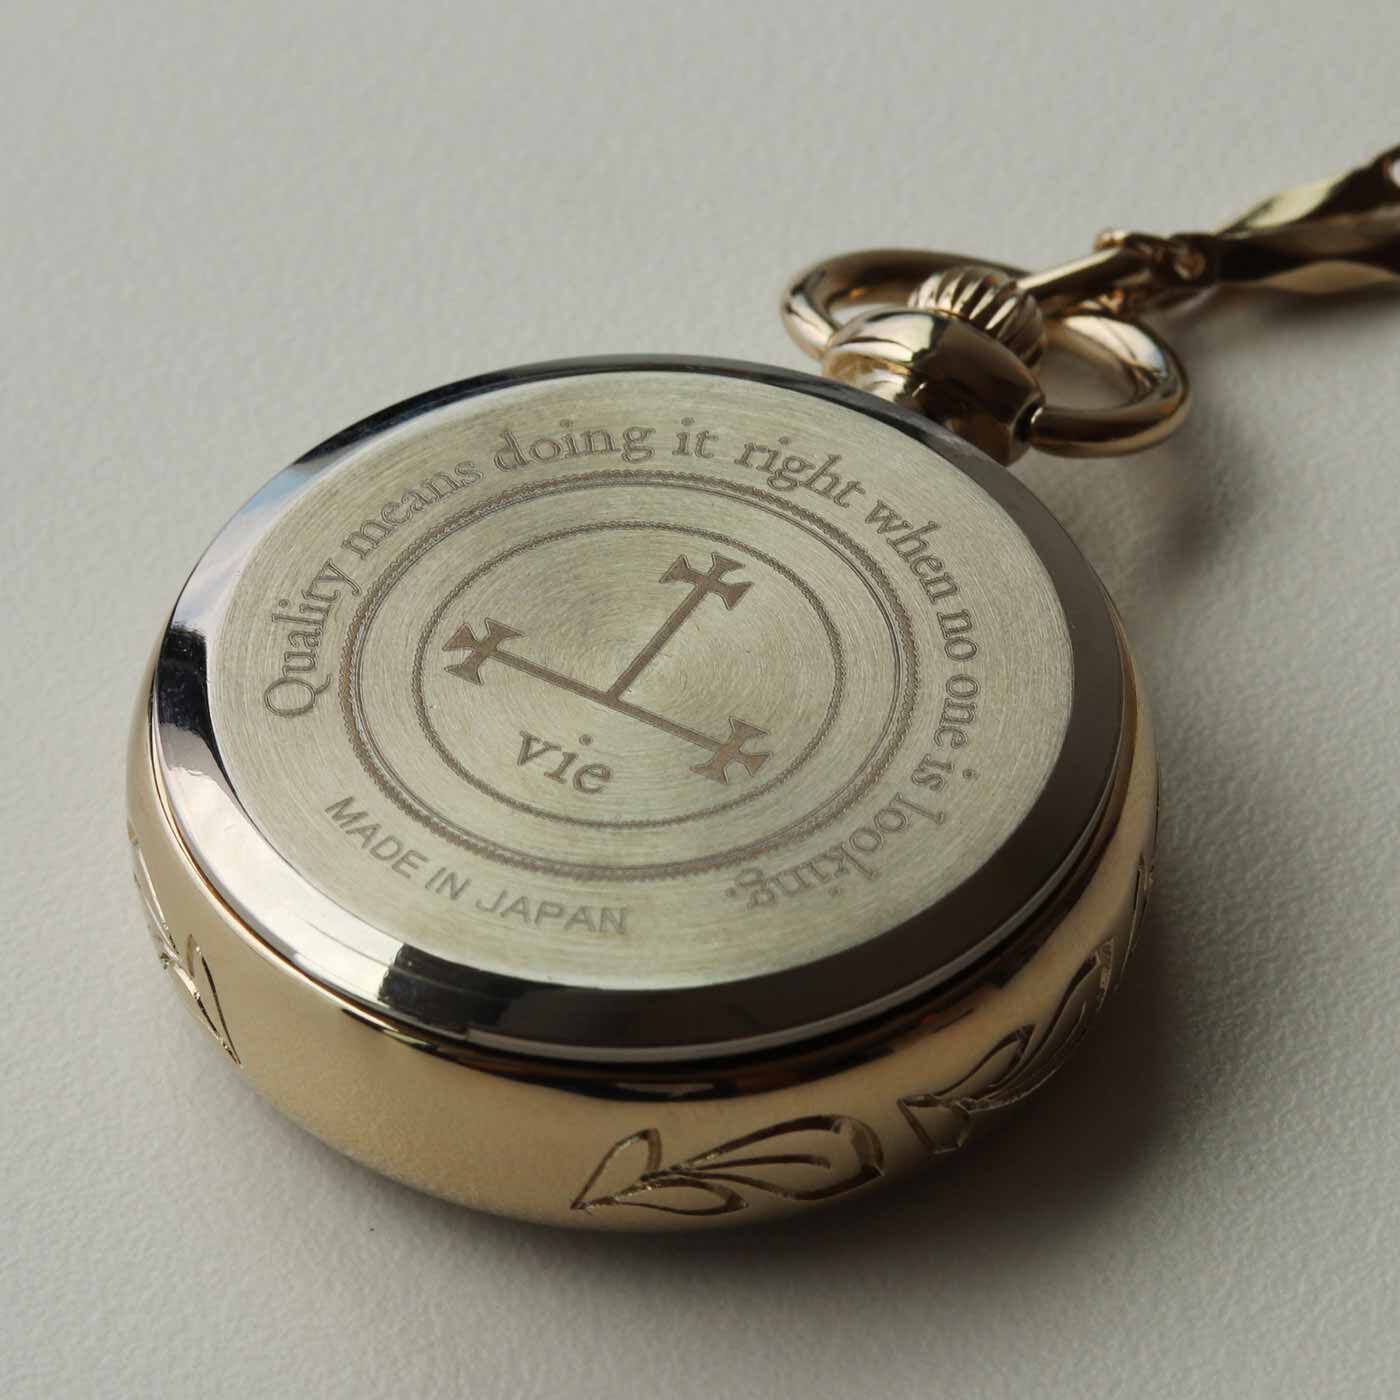 ＆Stories|滋賀の時計工房と作った アールデコ調の懐中時計〈シャンパンゴールド〉|裏面には、モノづくりにまつわるヘンリー・フォードの名言をレーザー刻印。